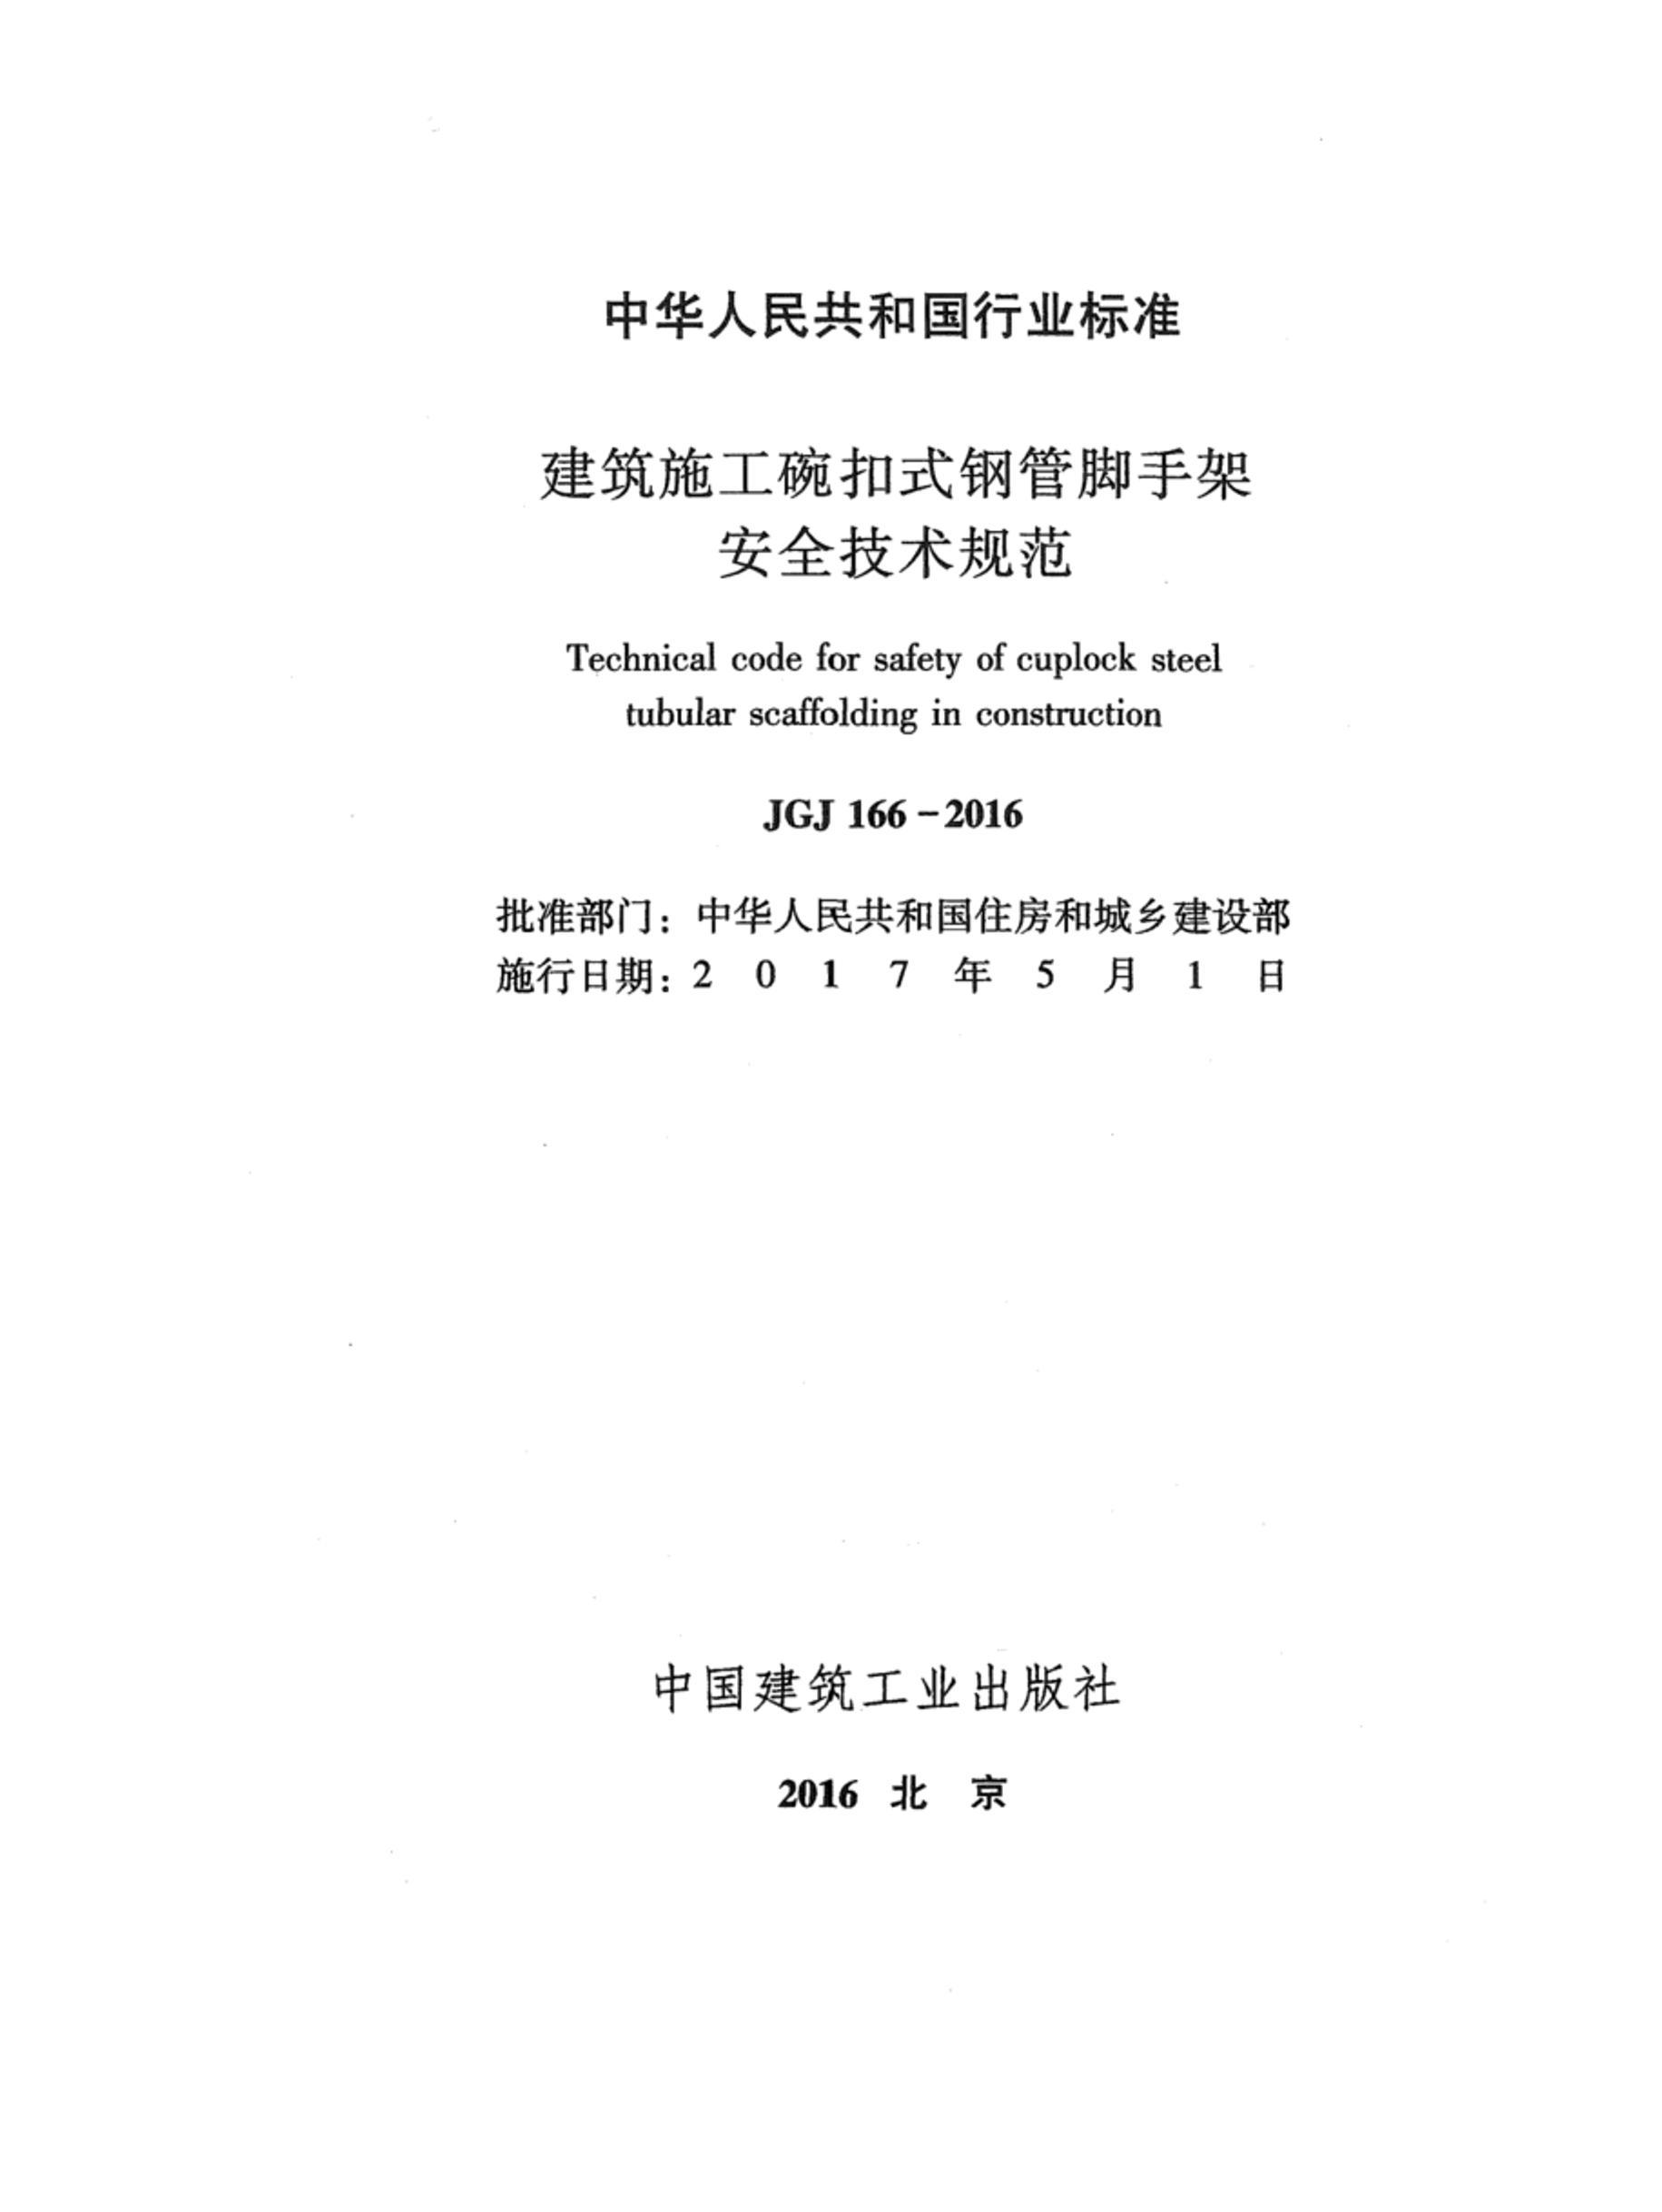 JGJ 166-2016 ʩʽֹּܽܰȫ淶.pdf2ҳ